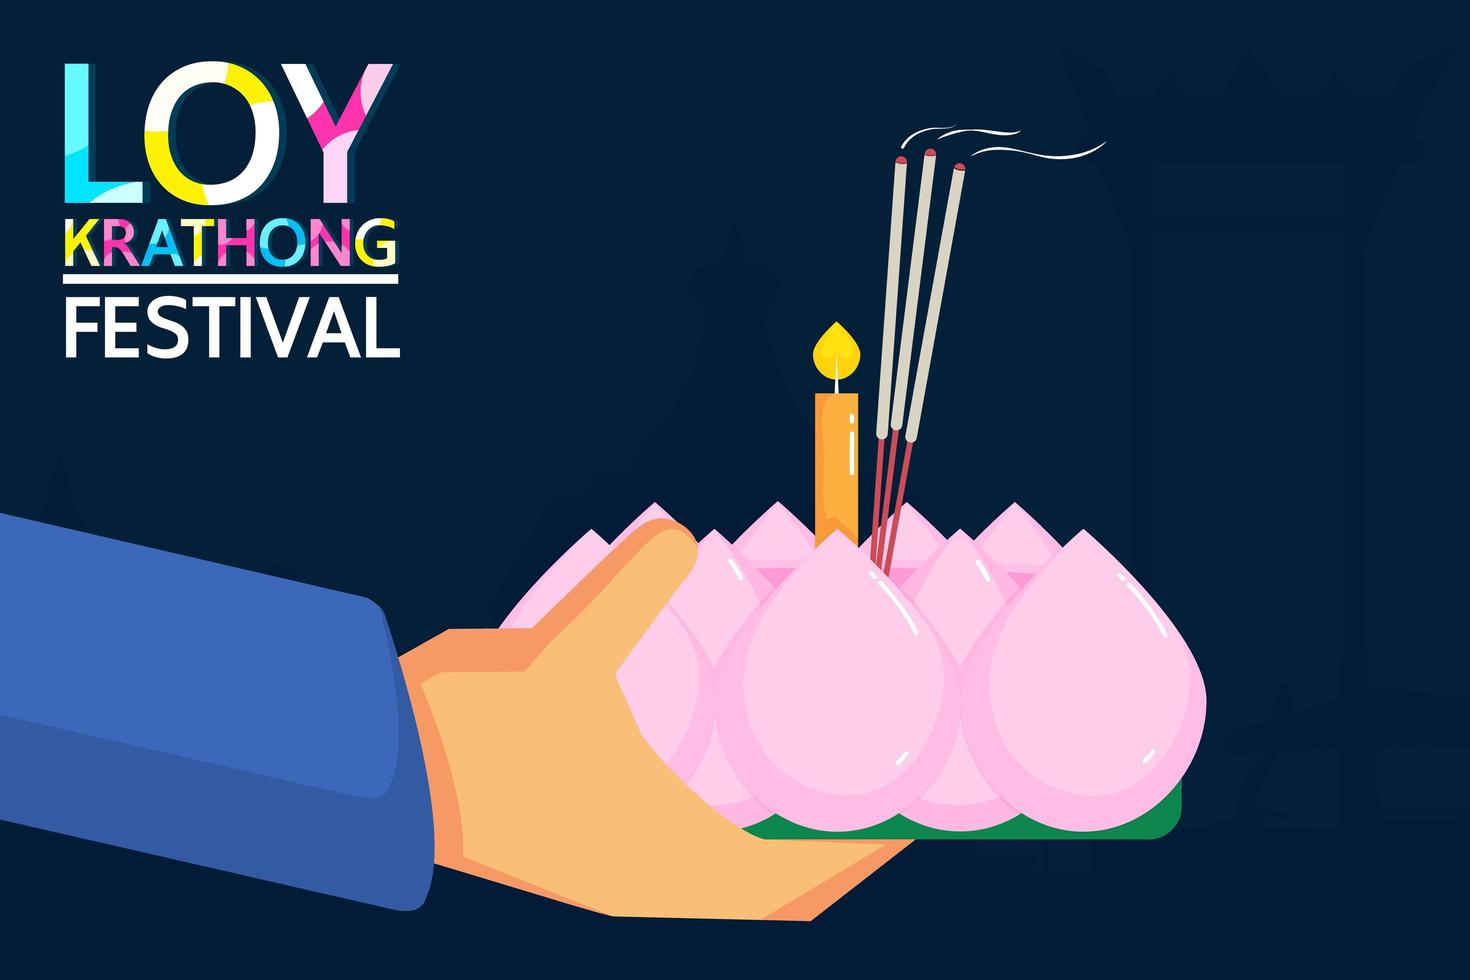 diseño del festival loy krathong con manos sosteniendo velas vector